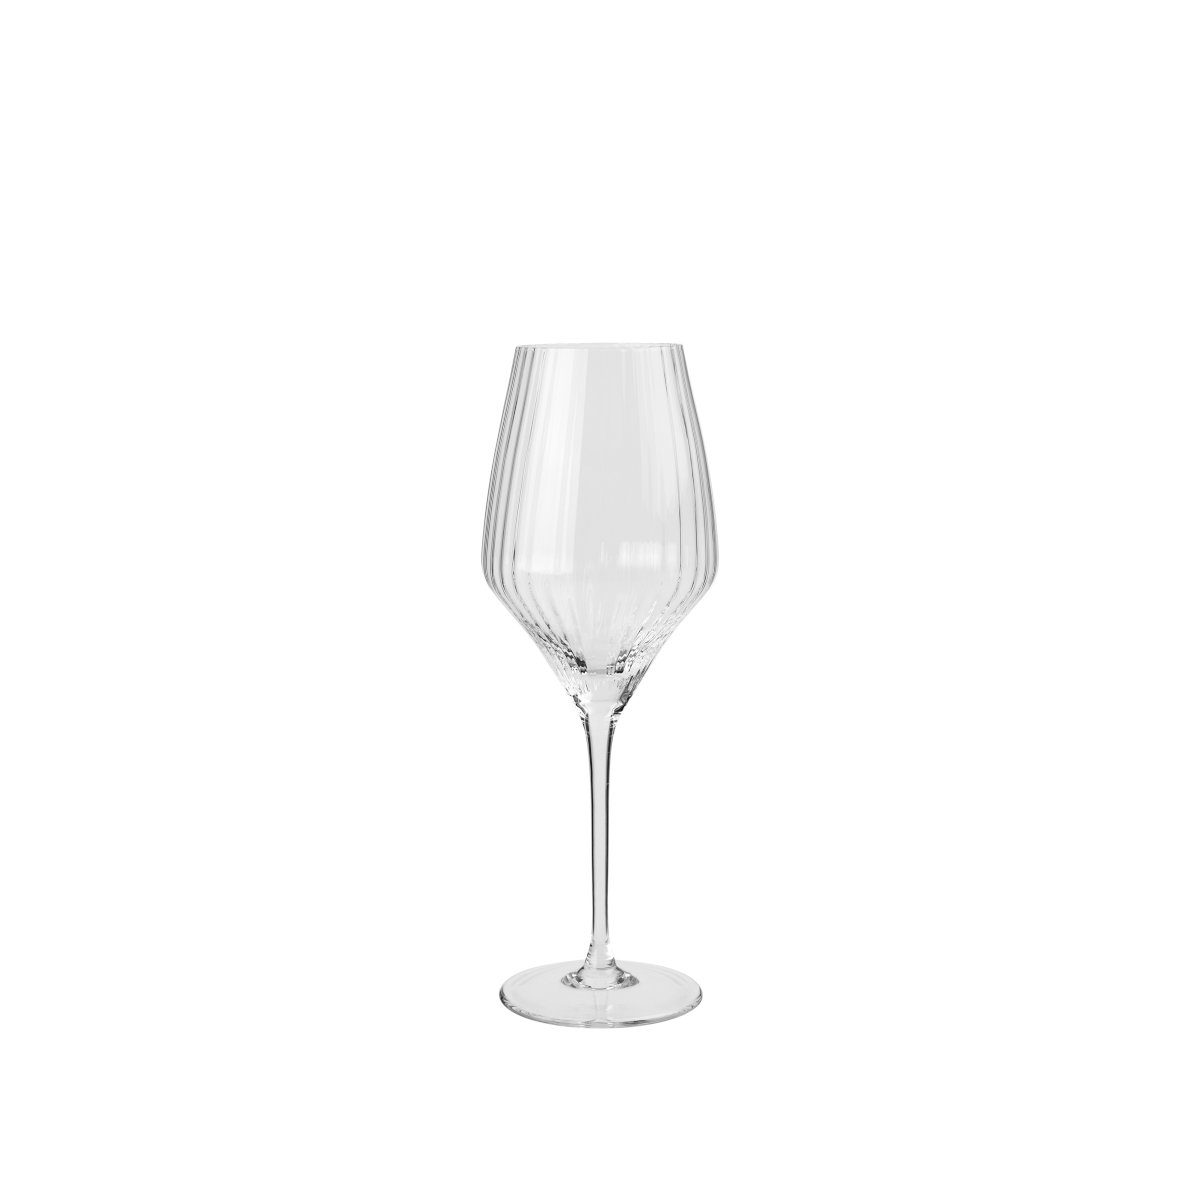 Broste Copenhagen Weißweinglas Sandvig Weißweinglas 0,45l, Glas mundgeblasen